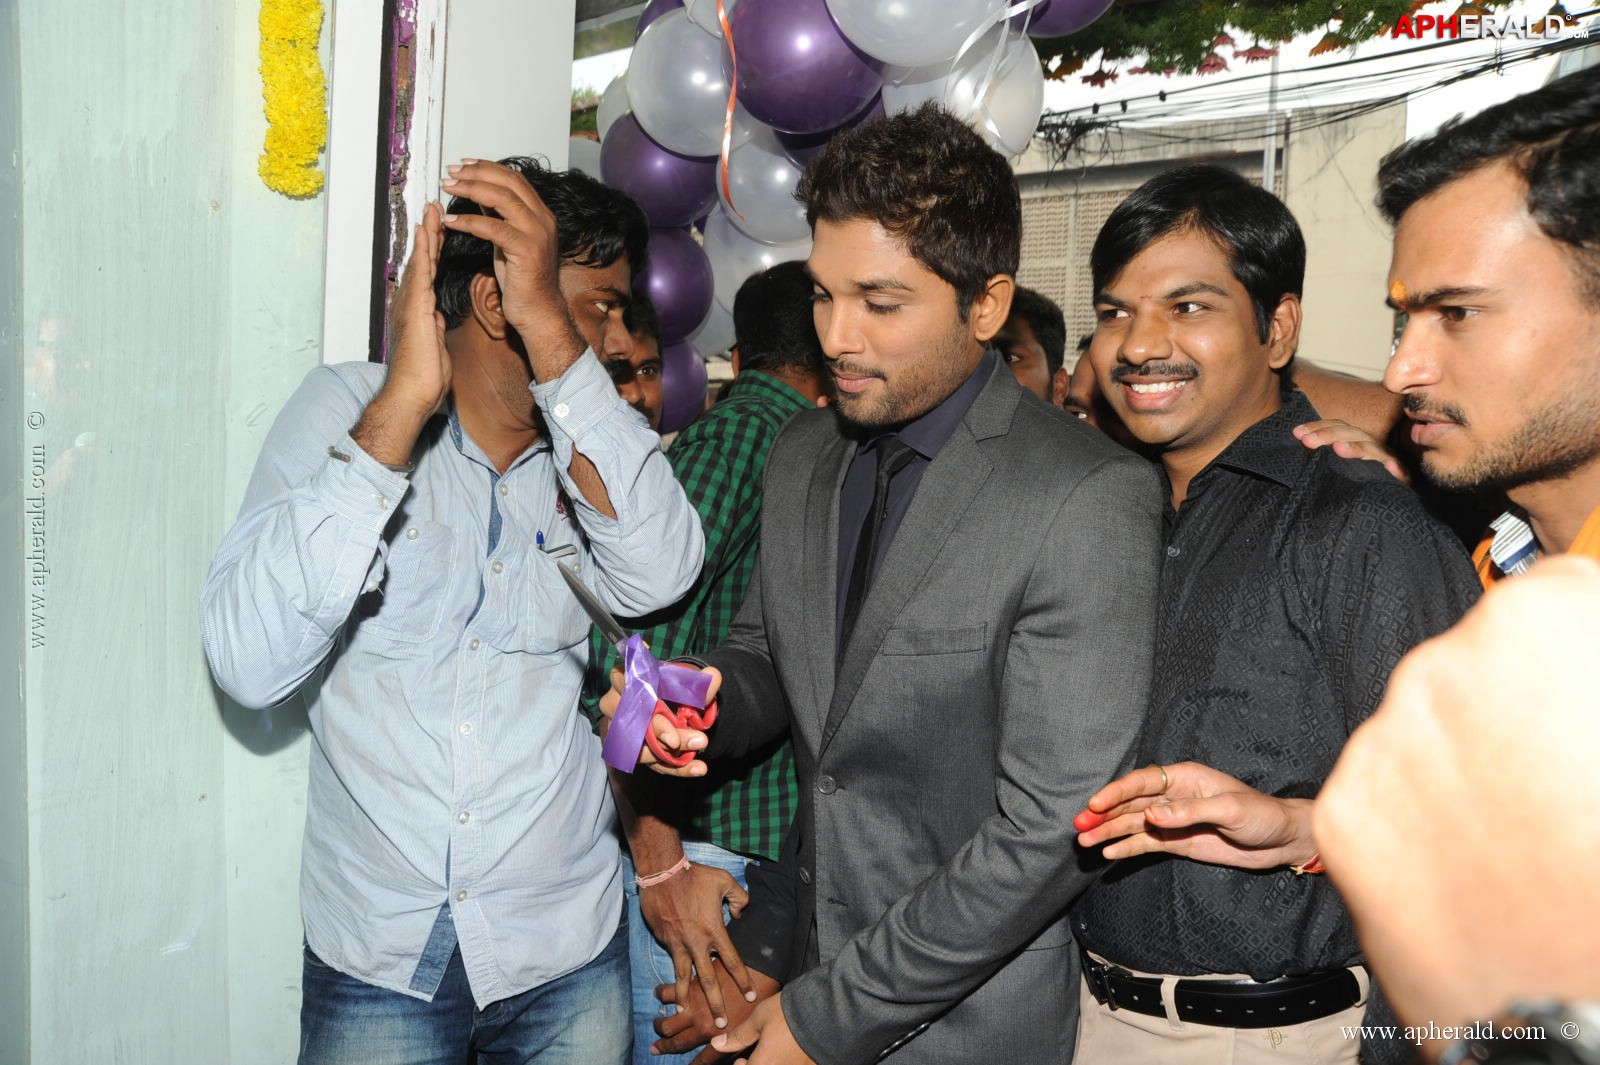 Allu Arjun at Lot Mobile Shop Opening